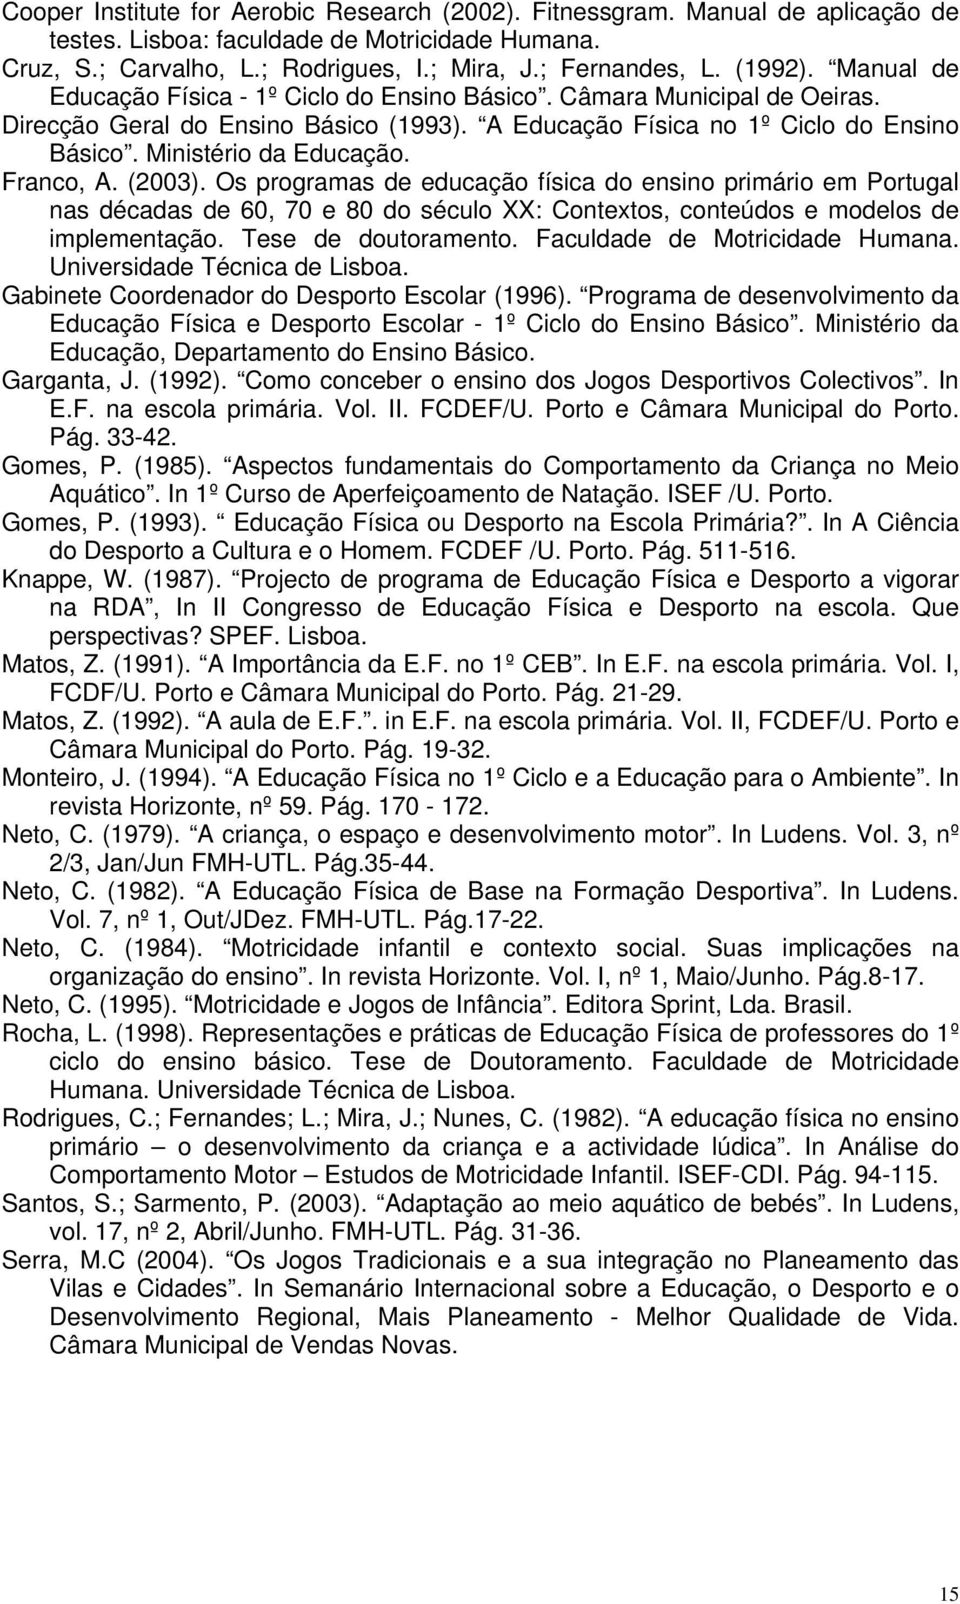 Franco, A. (2003). Os programas de educação física do ensino primário em Portugal nas décadas de 60, 70 e 80 do século XX: Contextos, conteúdos e modelos de implementação. Tese de doutoramento.